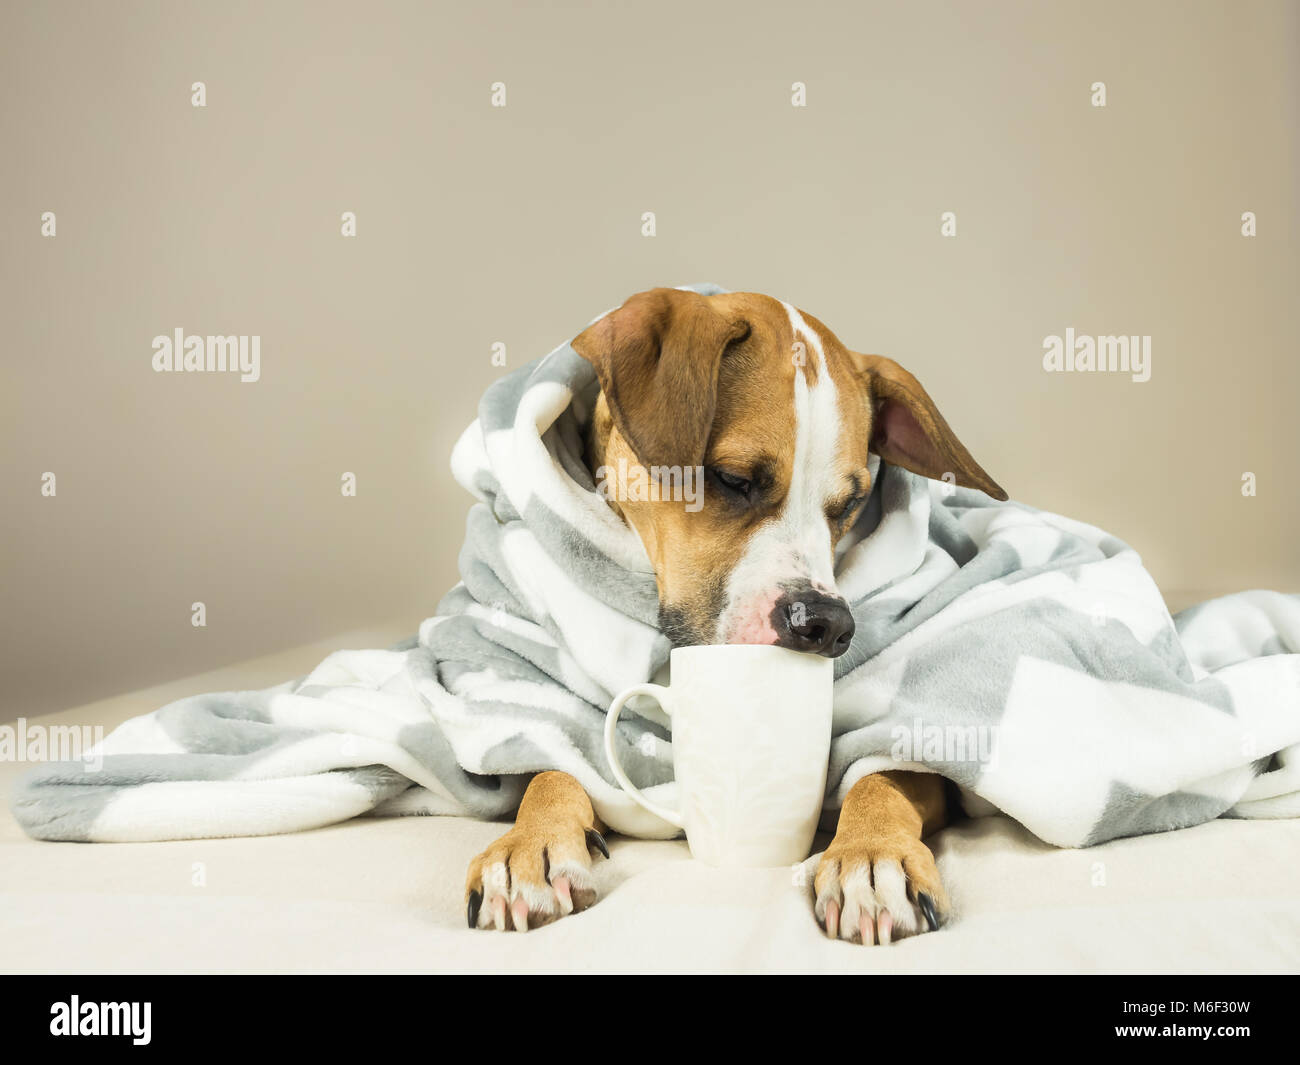 Cute funny Hund im Bett mit Plaid und Schale posieren. Junge Staffordshire Terrier Hund Knuddel in Throw Blanket und hält weiße Tasse, vortäuschen, Tee zu trinken Stockfoto